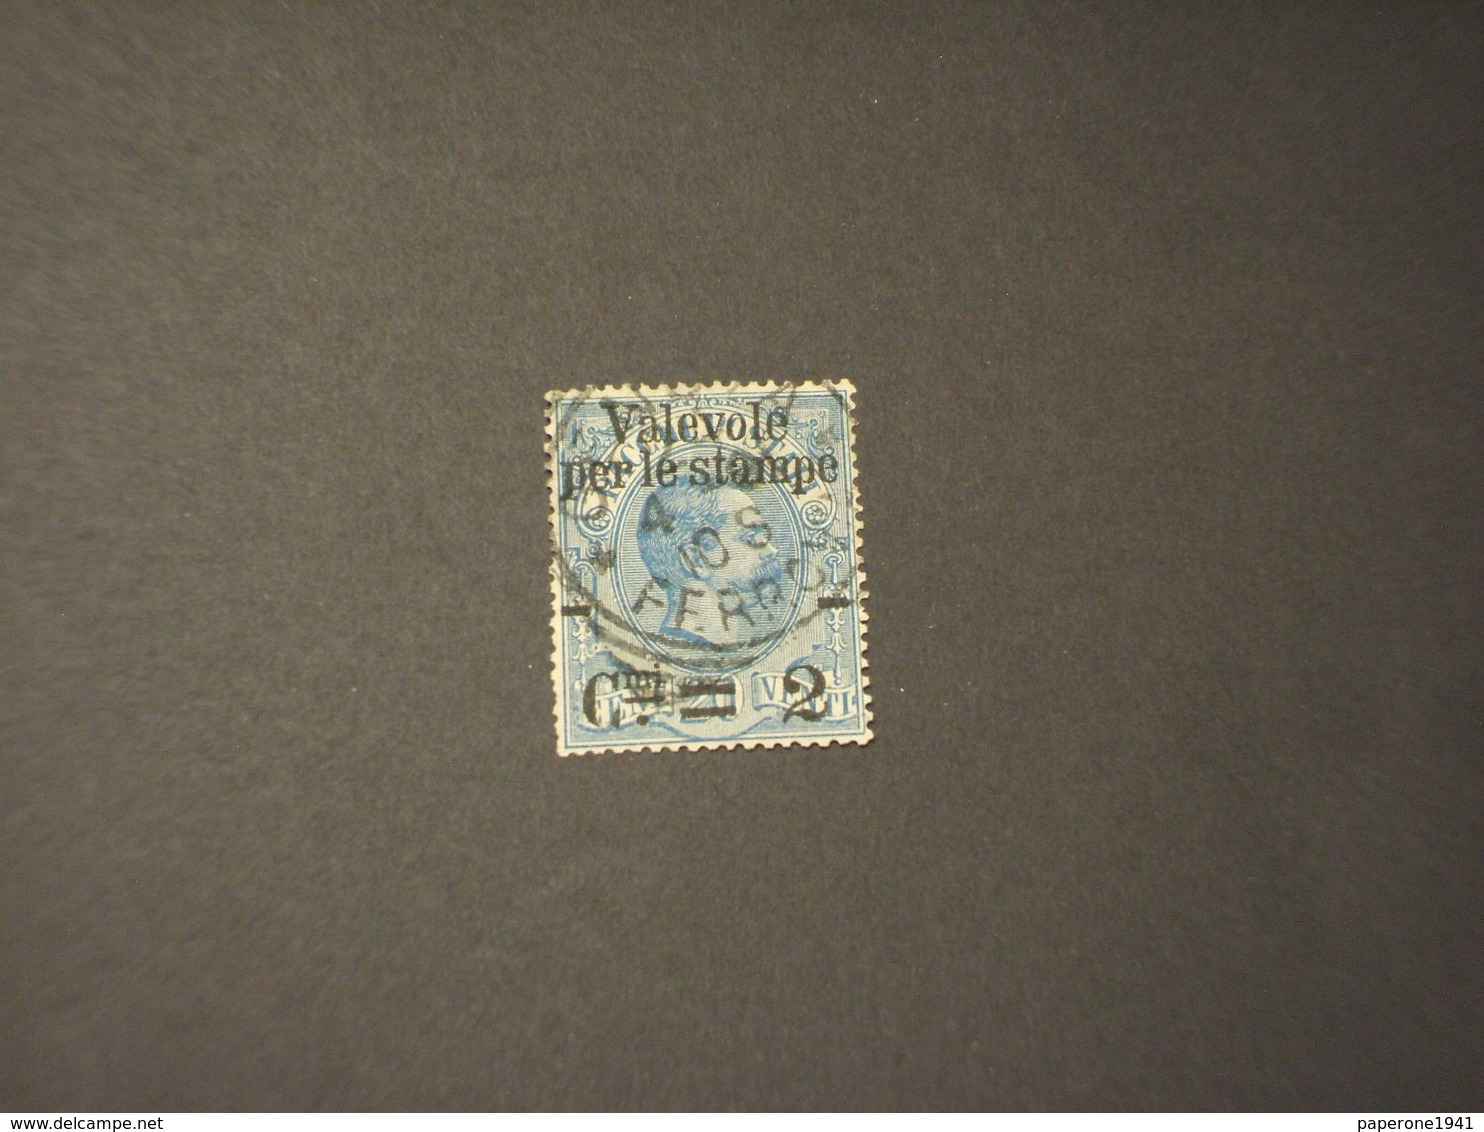 ITALIA REGNO - VARIETA' - 1890 RE, 2 Su 20, C Di Cmi Rotta   - TIMBRATO/USED - Colis-postaux